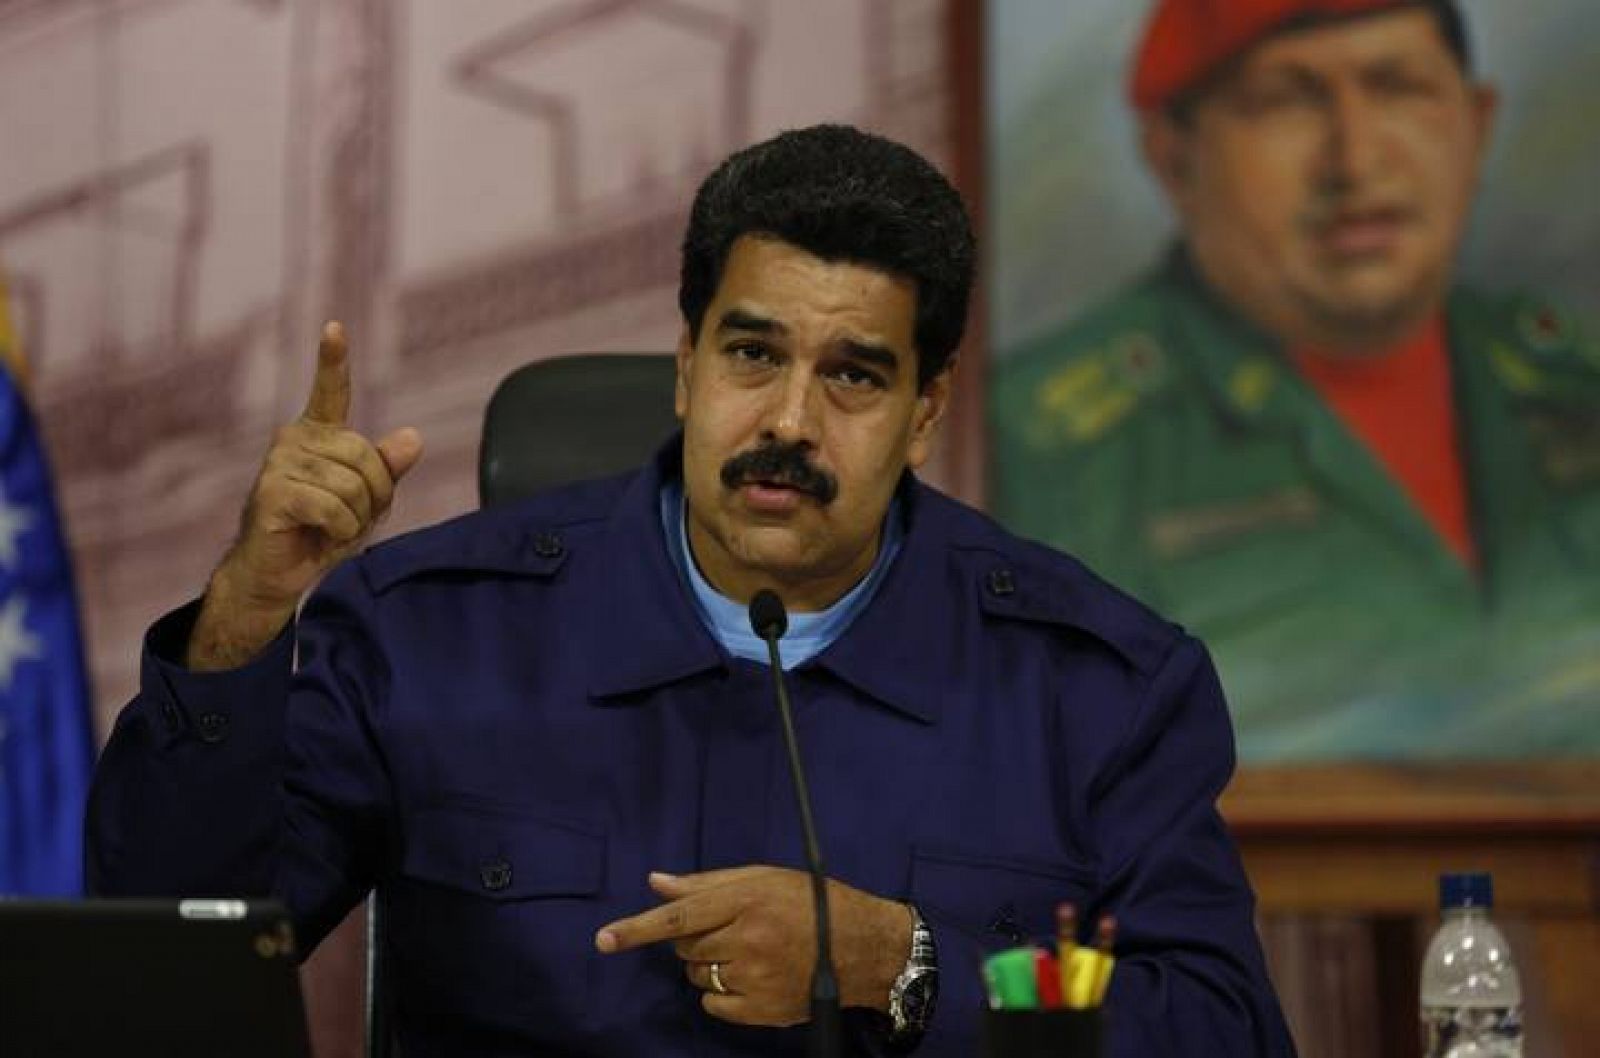 El presidente venezolano Nicolás Maduro durante su comparecencia ante los medios de comunicación en el Palacio Presidencial de Miraflores, en Caracas